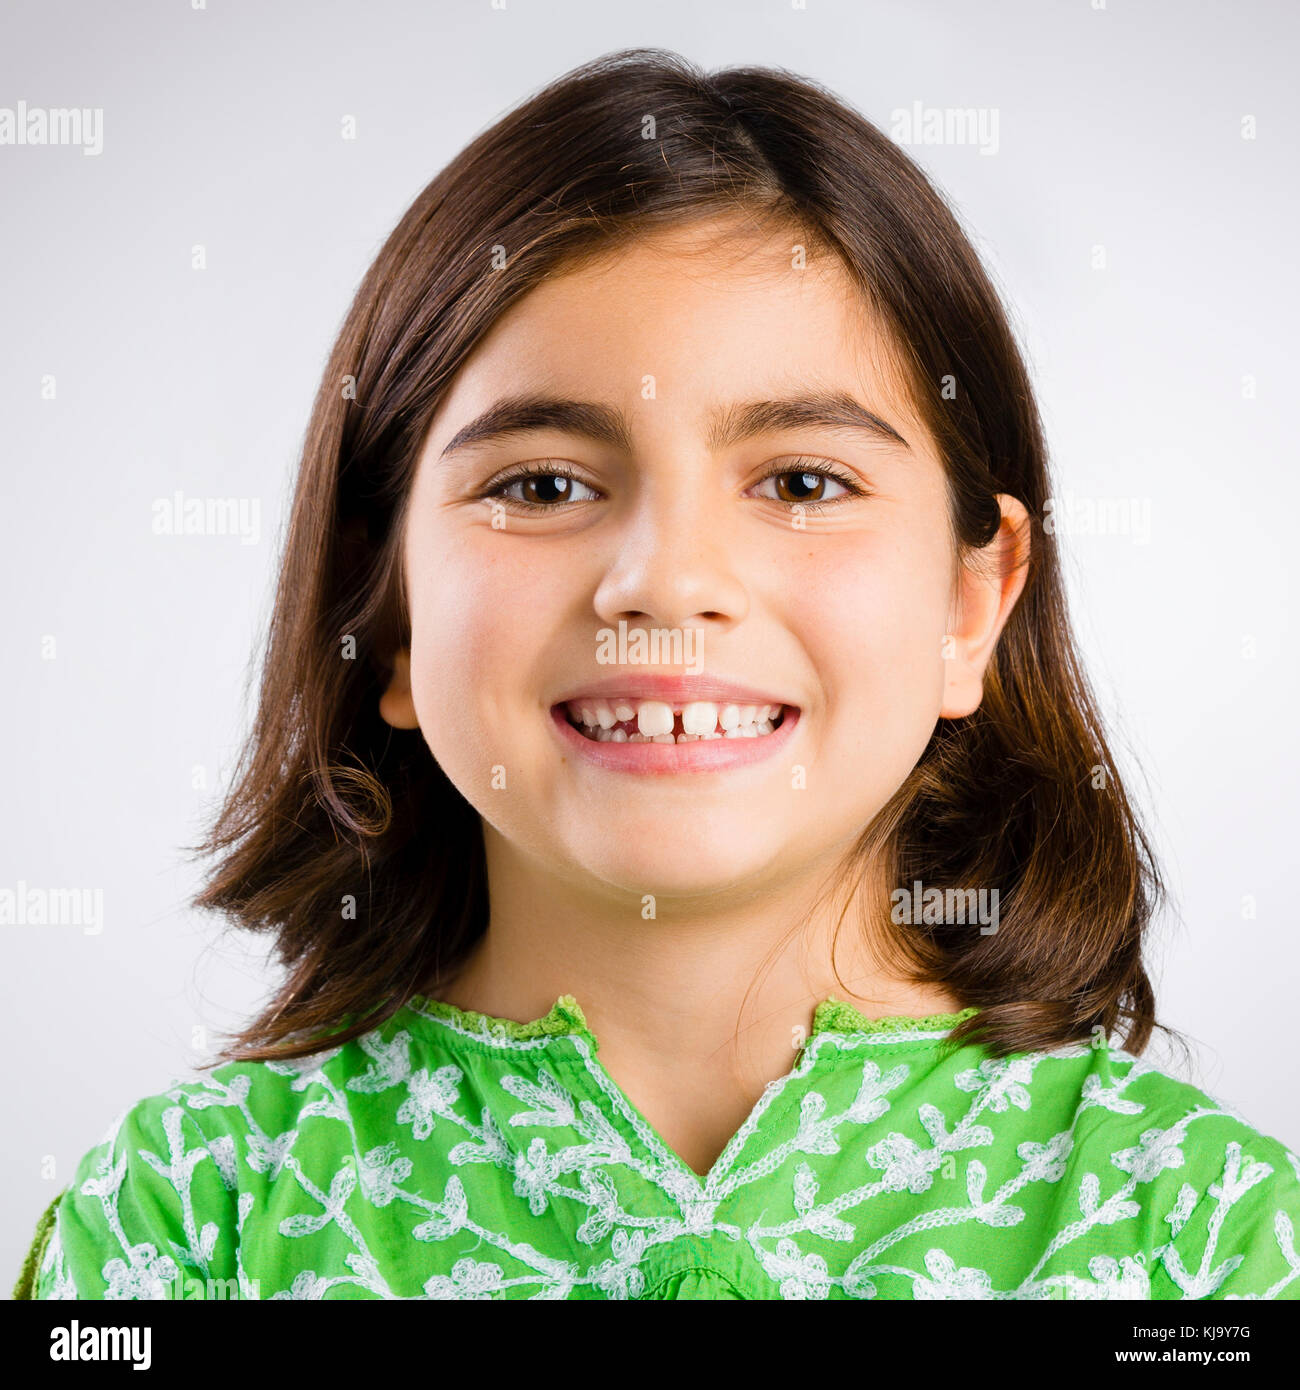 Retrato de una niña haciendo una expresión feliz Foto de stock